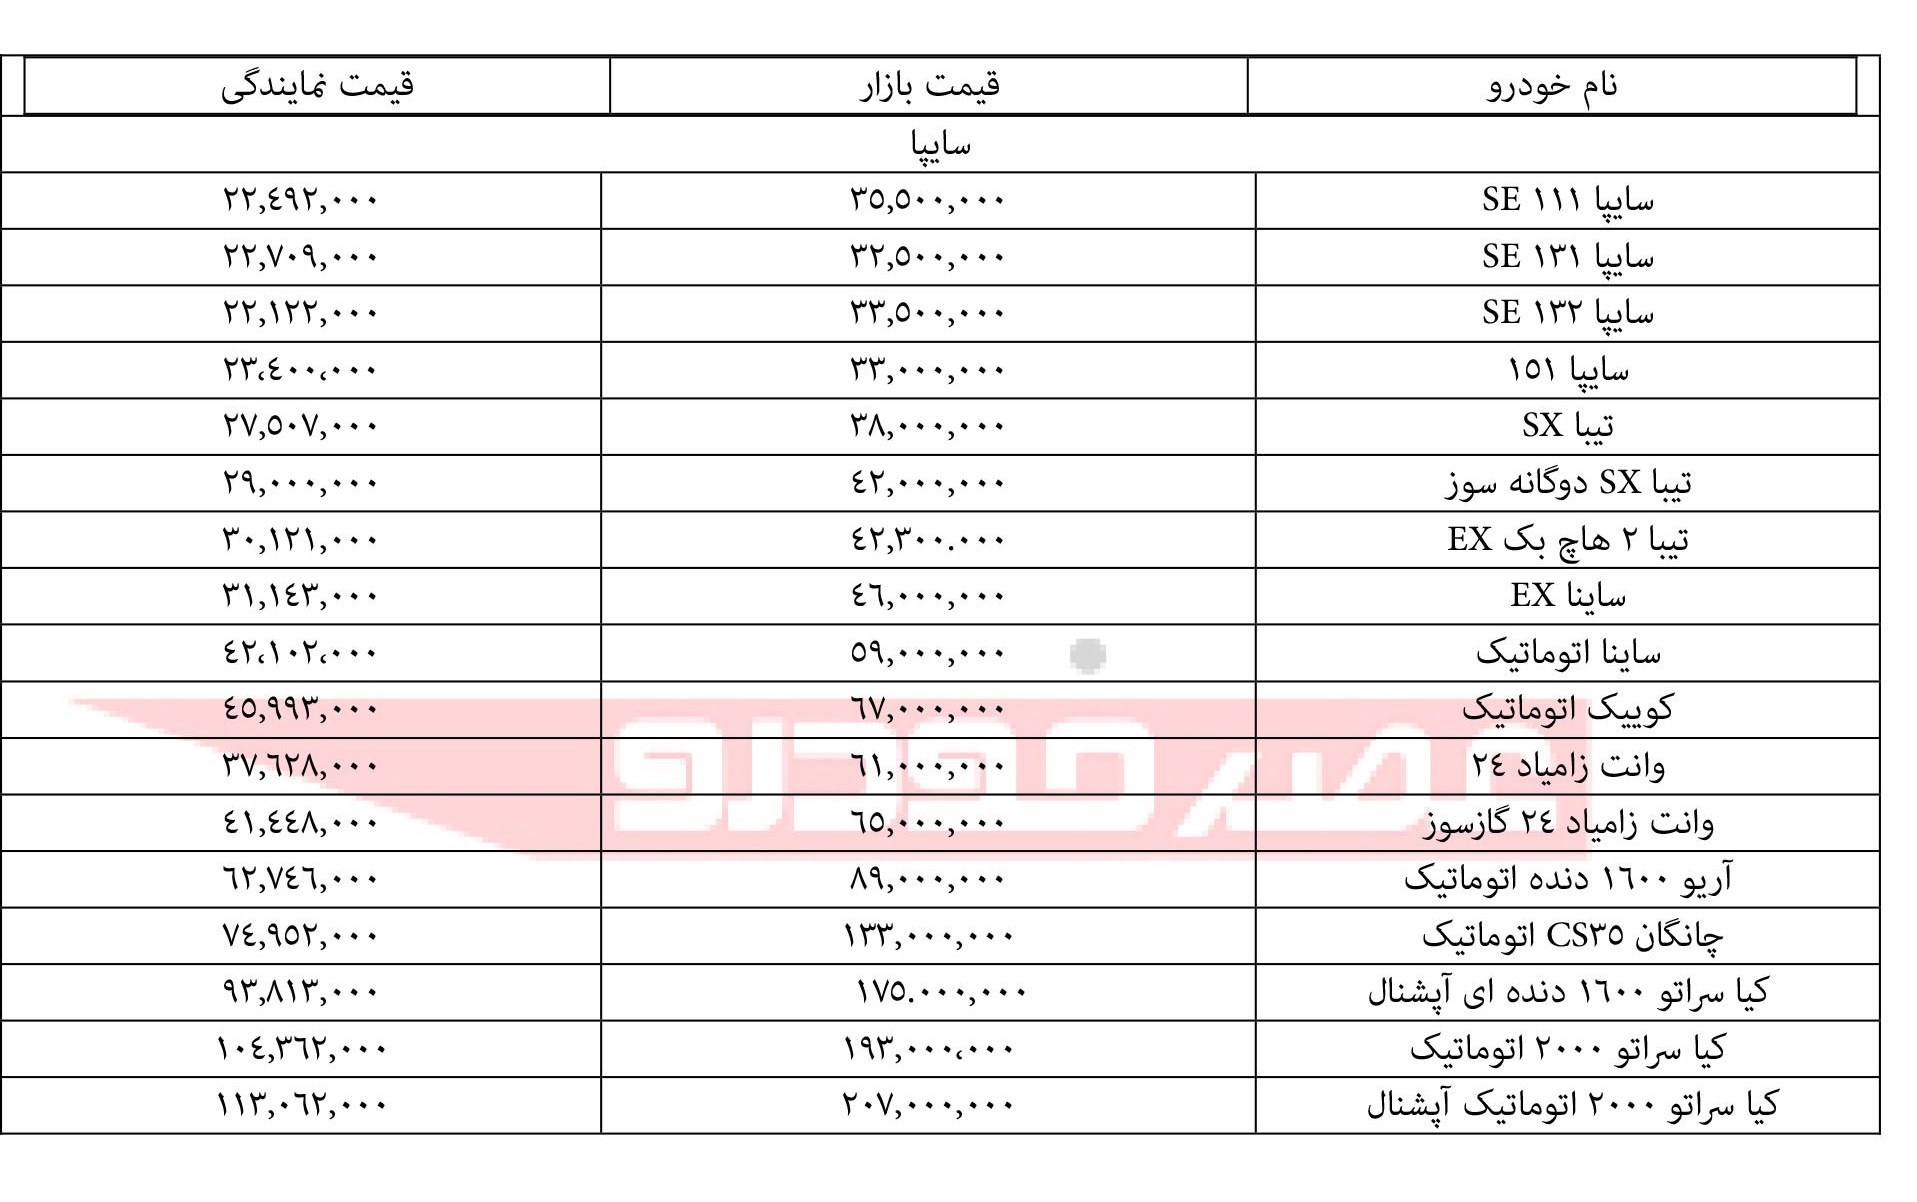 جدول: قیمت محصولات سایپا ۱۵ مهر ۹۷